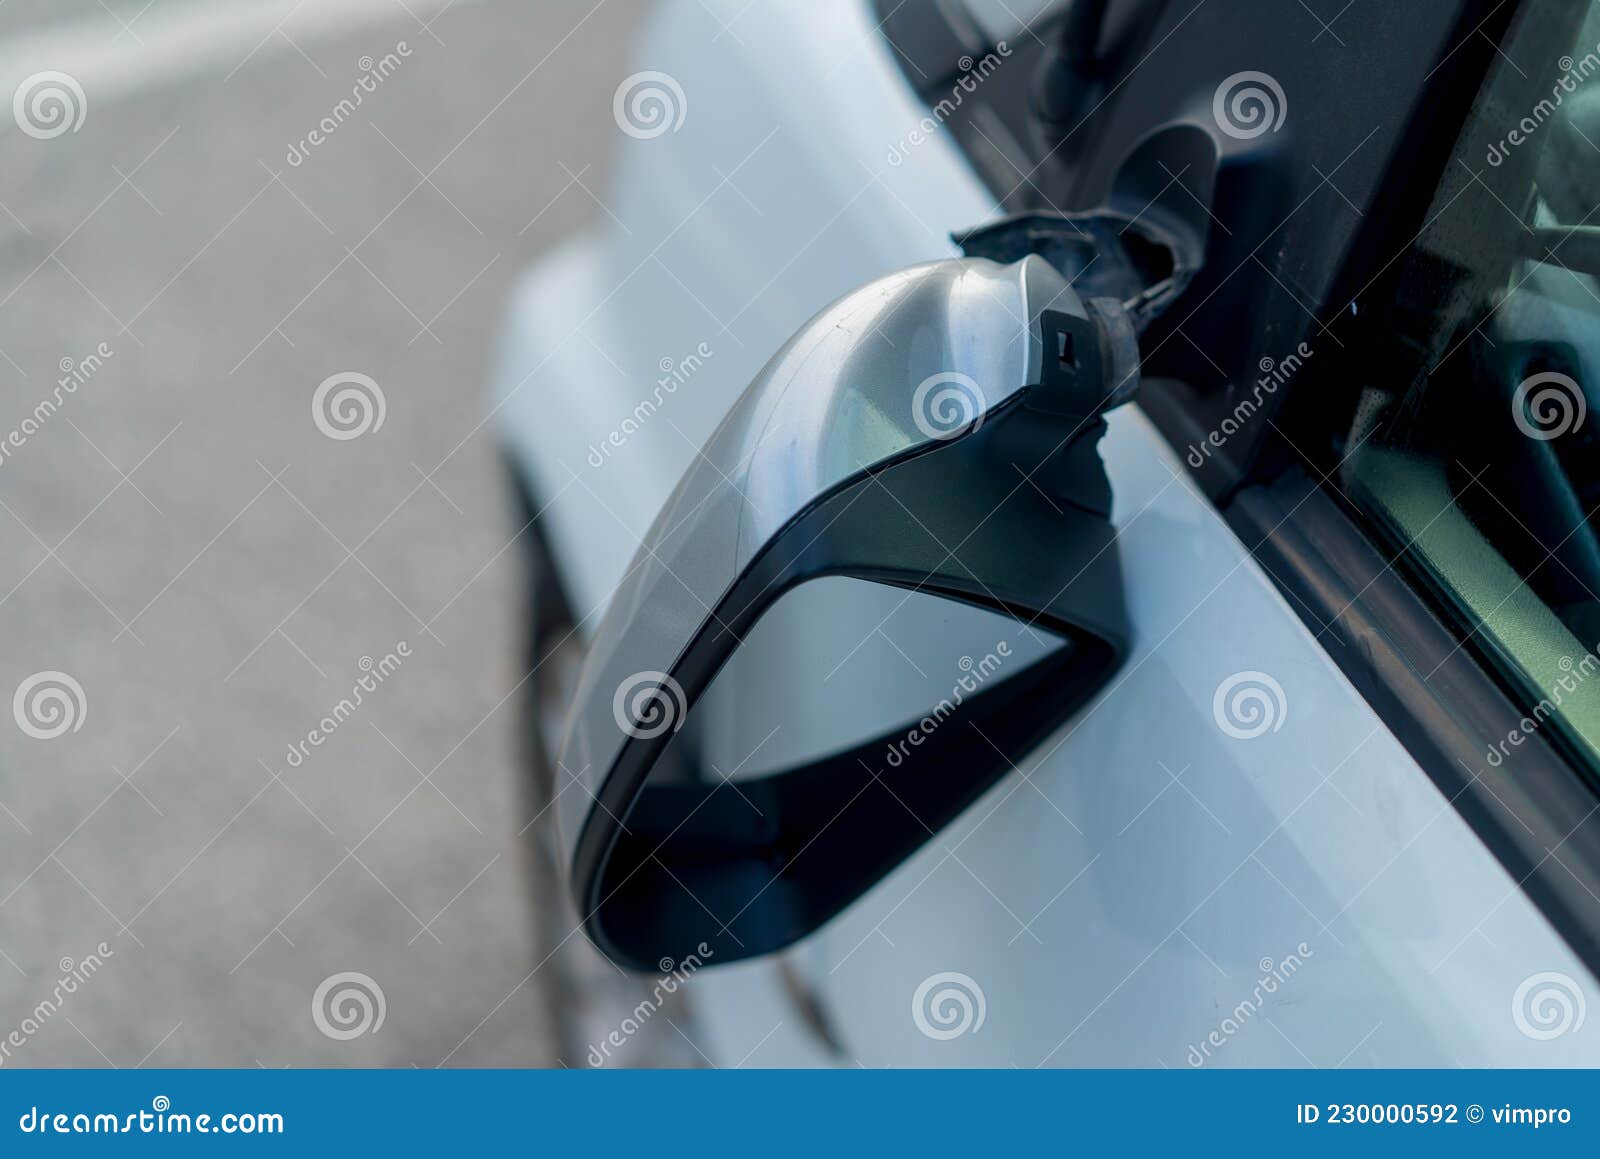 Abgebrochener Seitenspiegel am Auto. Weißes Auto Auf Der Straße Nach  Unfall. Stockfoto - Bild von spiegel, unfall: 230000592